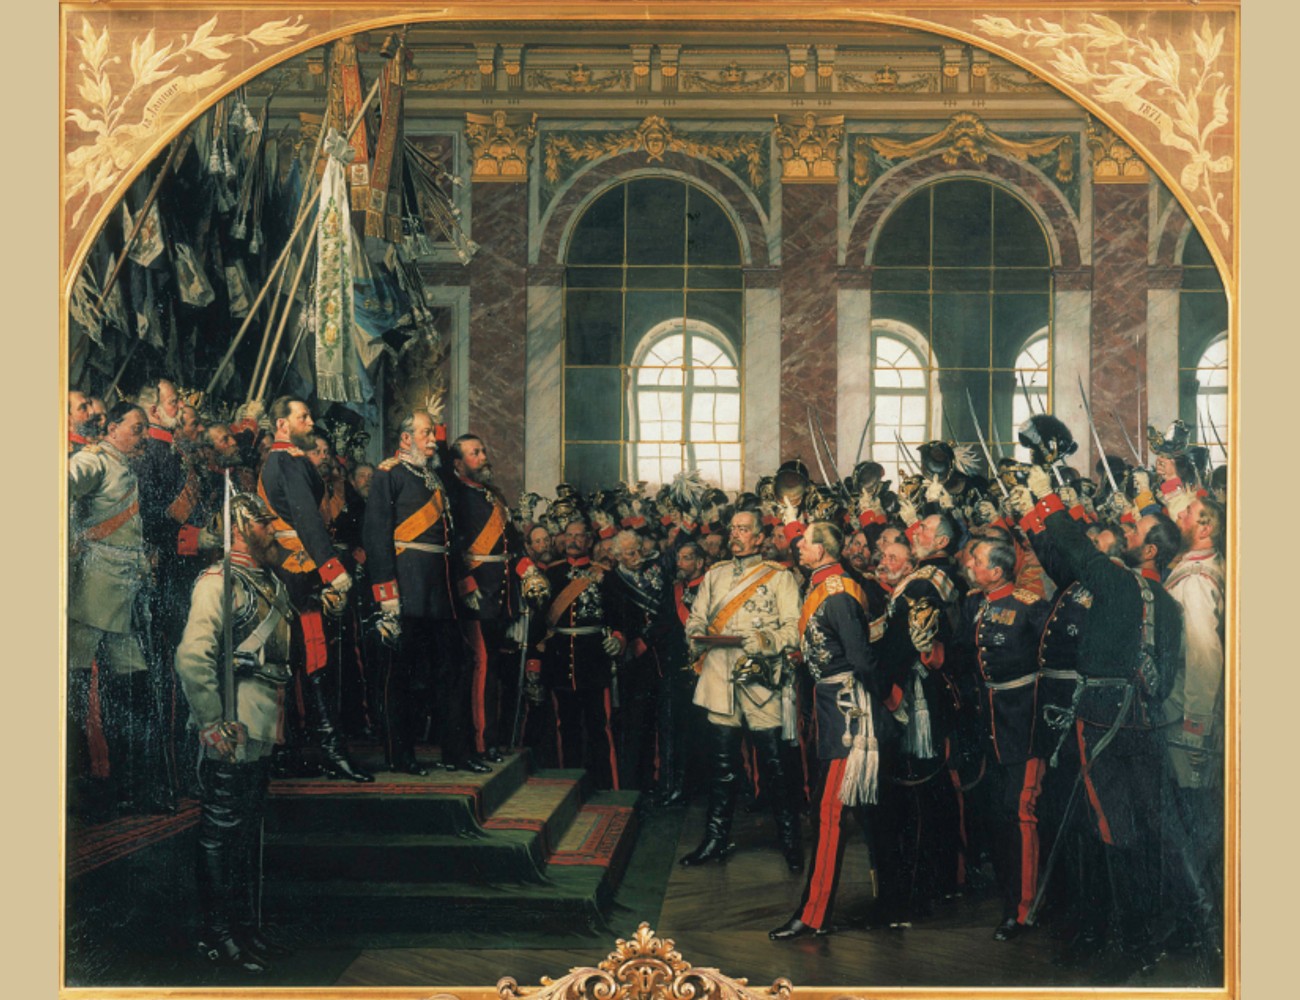 Lezing | Heilige Roomse rijk tot de eerste Duitse eenheid